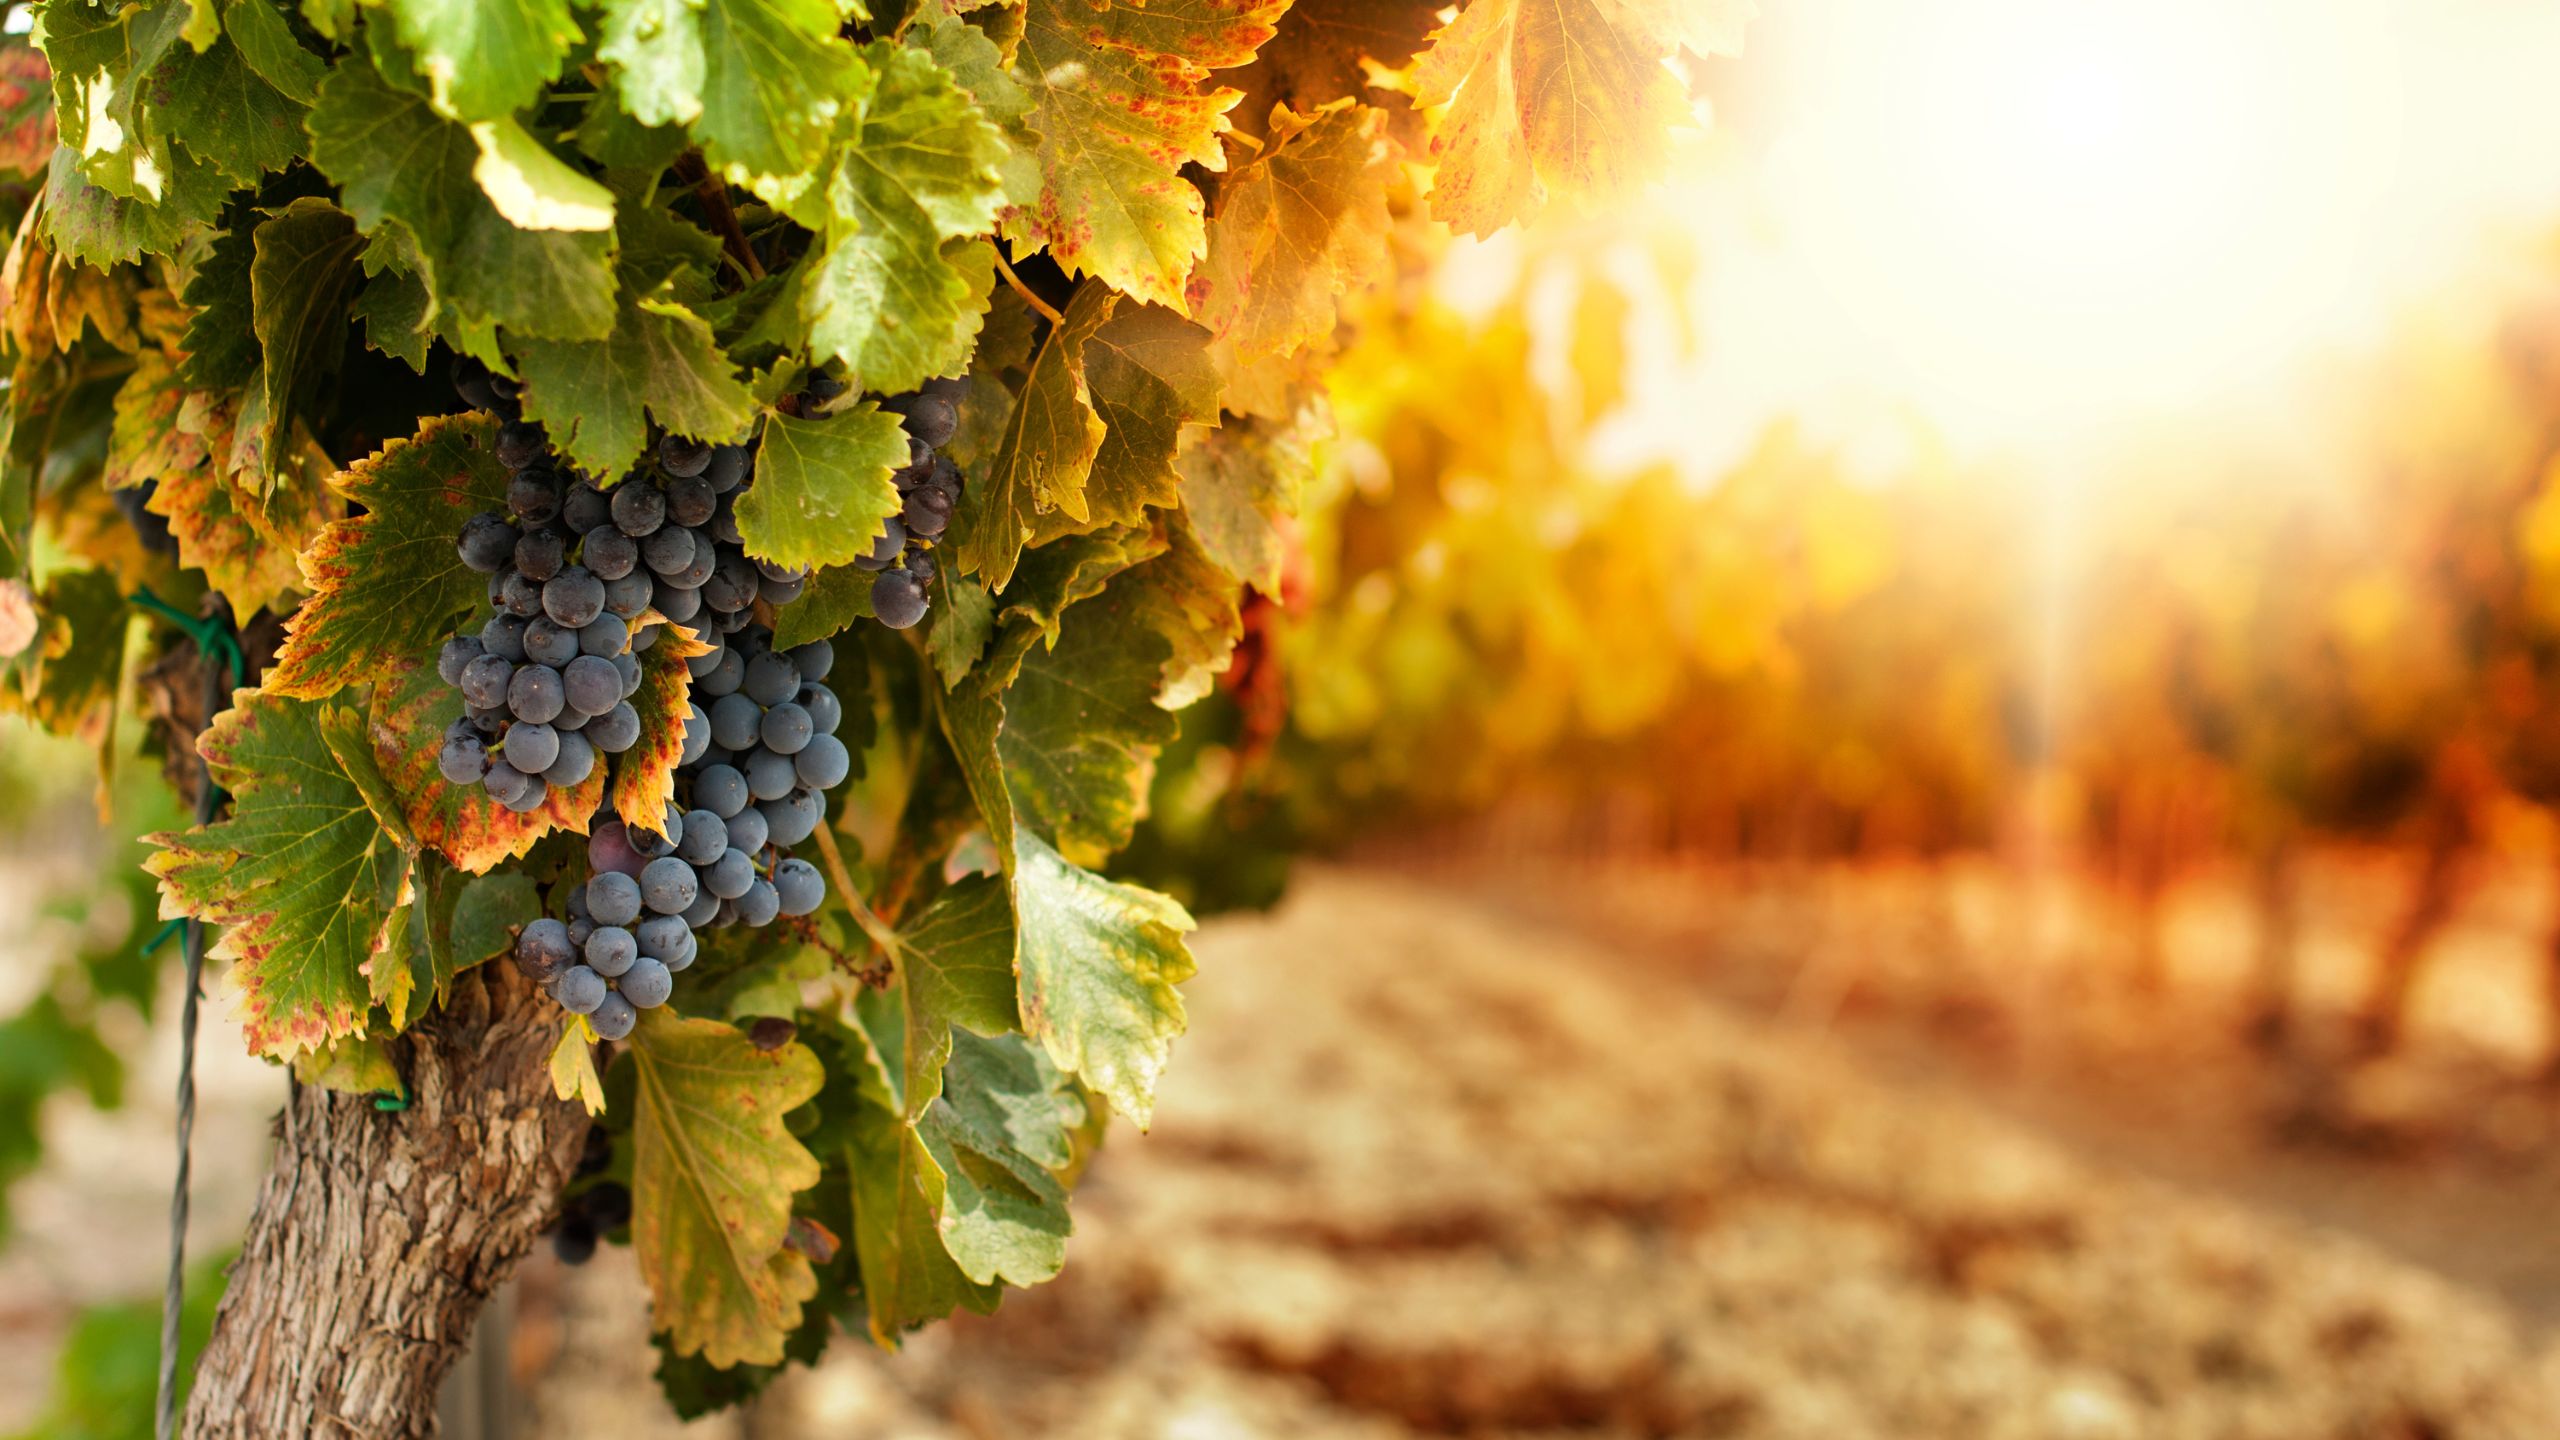 Panagia Vineyards in Cyprus